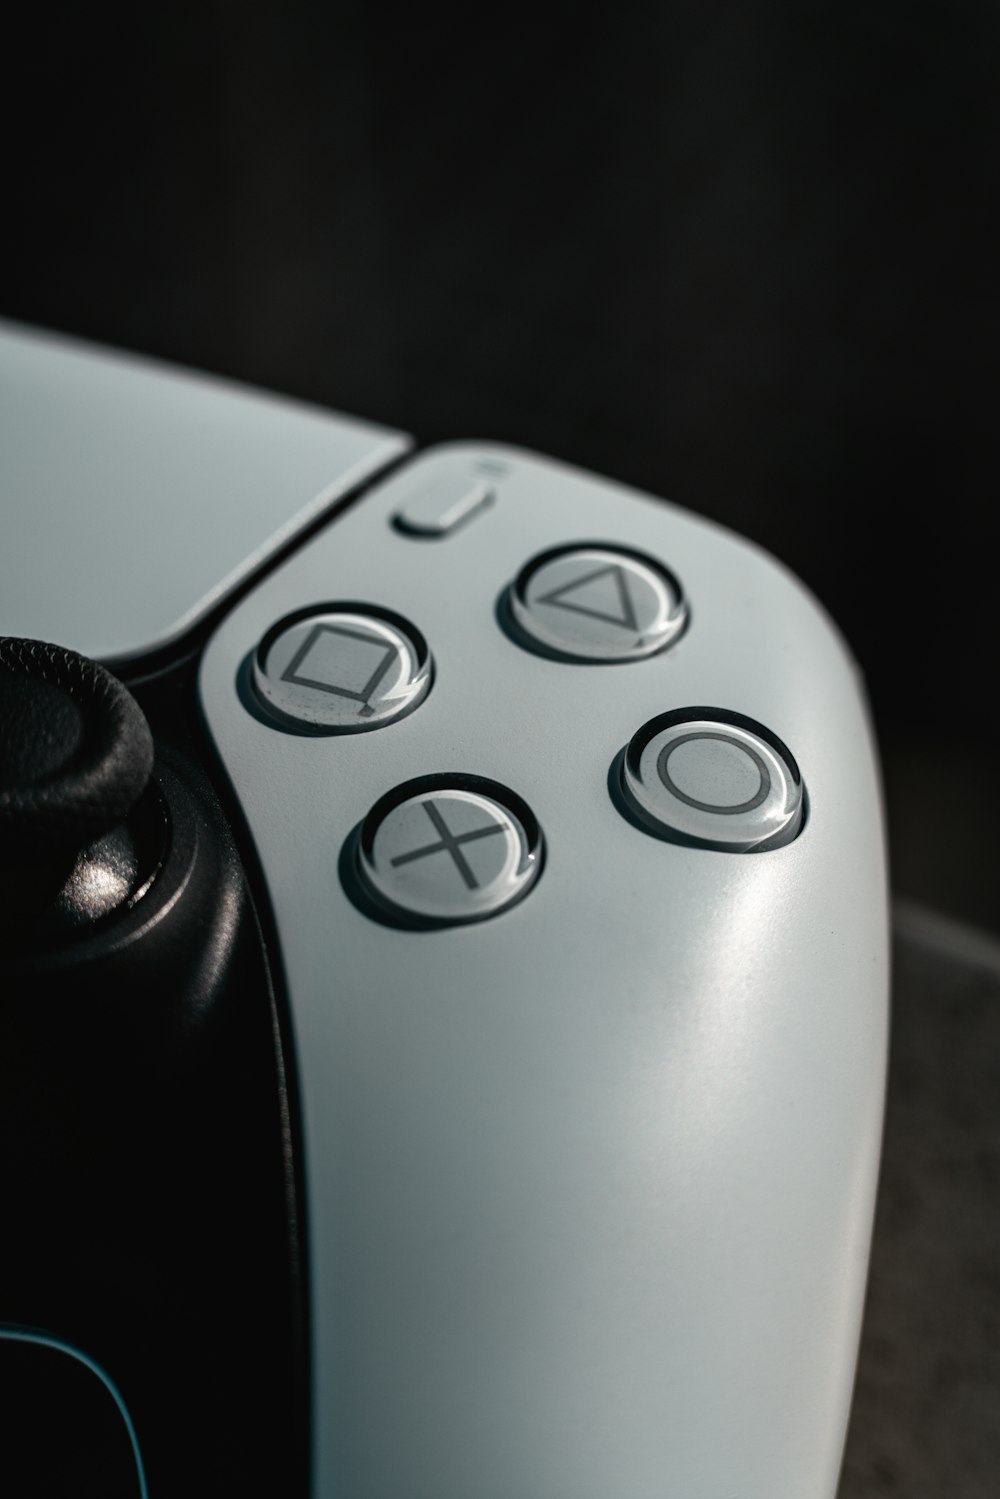 Manette de jeu Xbox One grise et noire